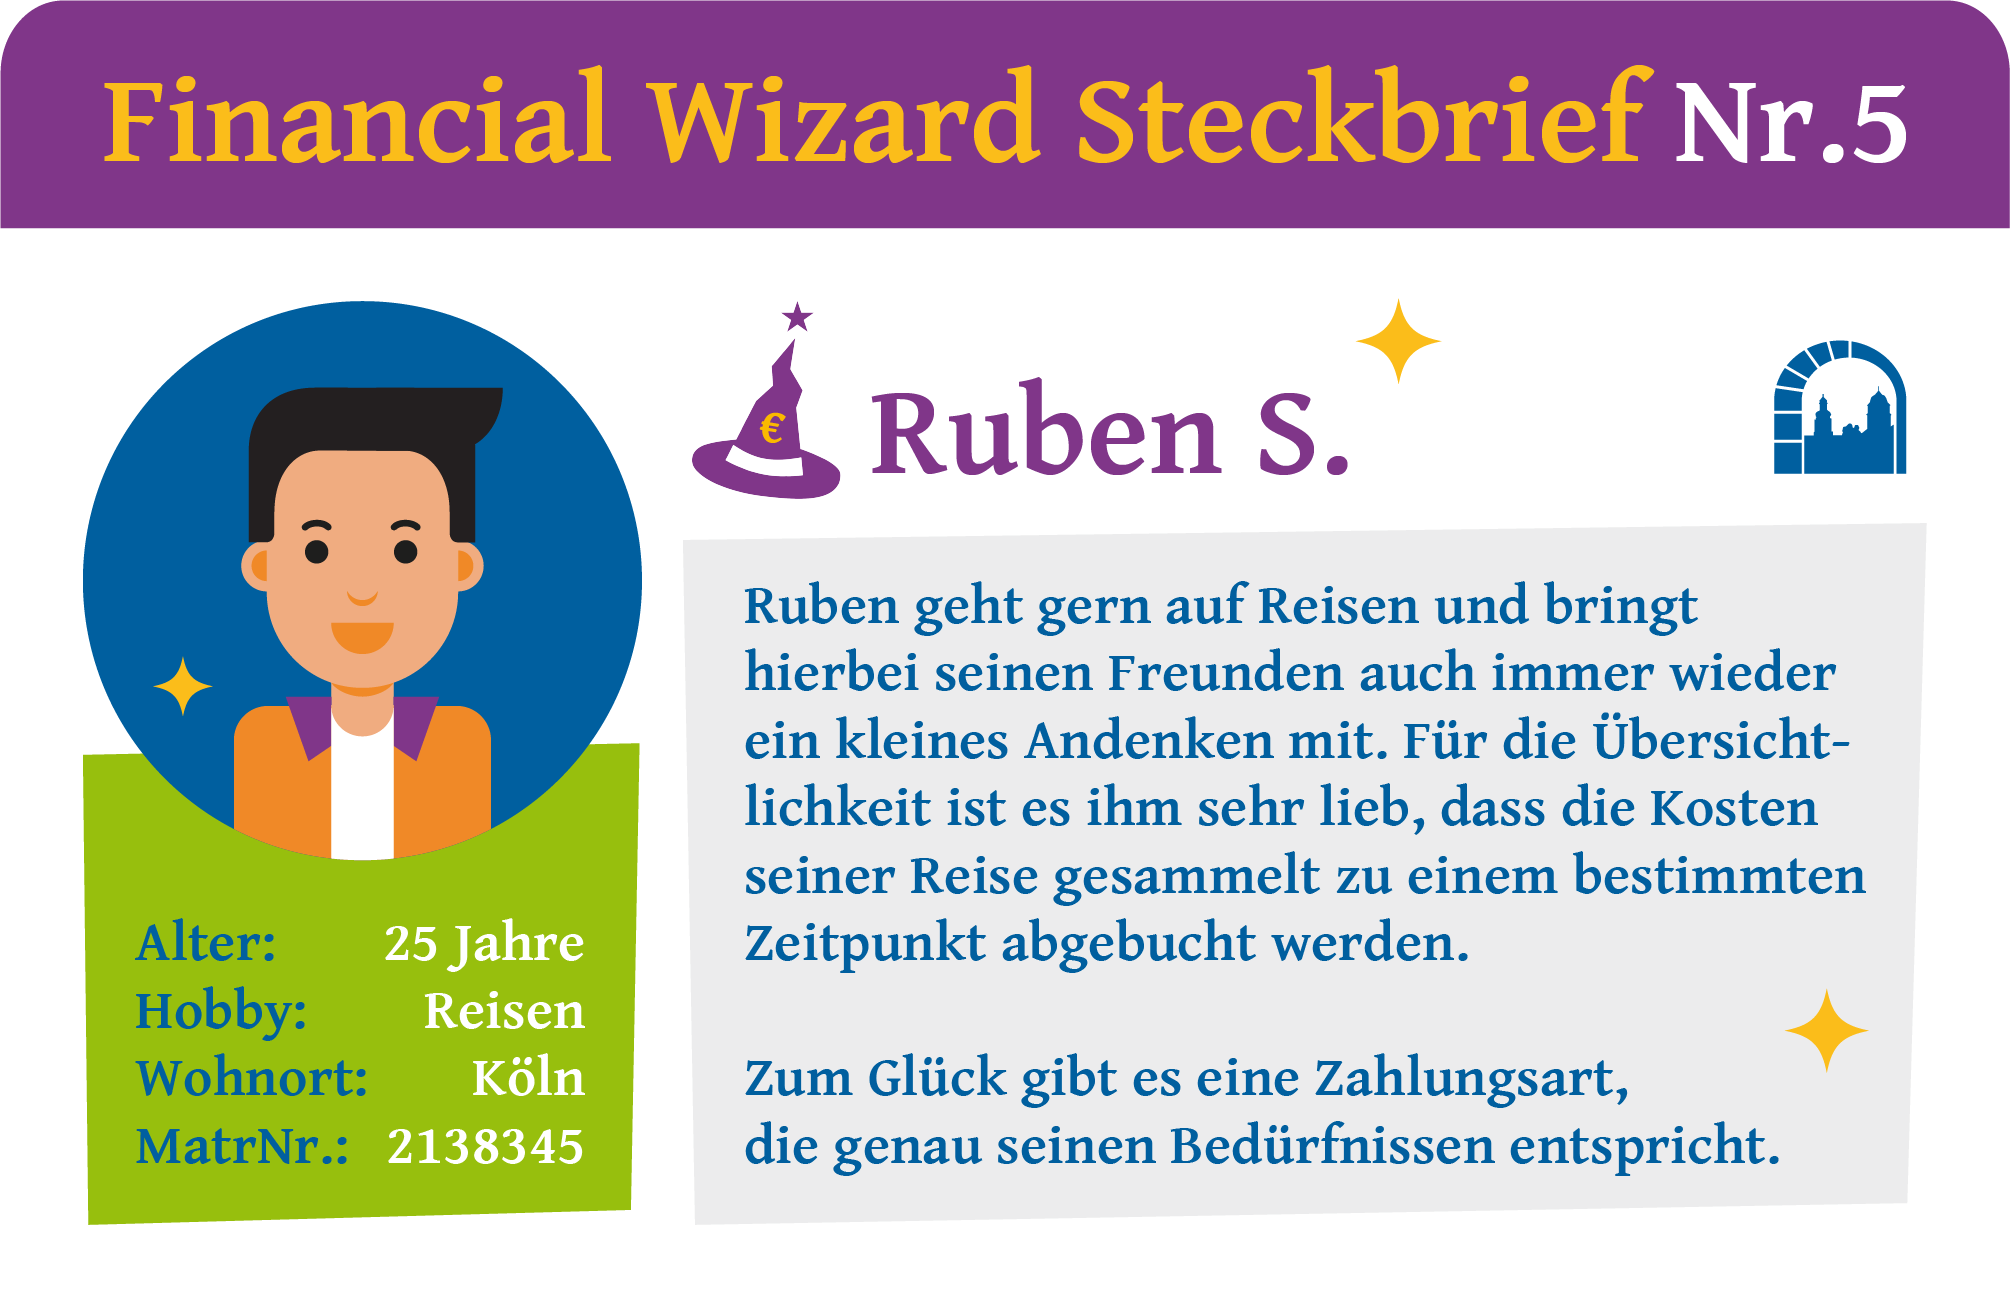 Steckbrief Nr. 5 zur Financial Wizard Challenge 4